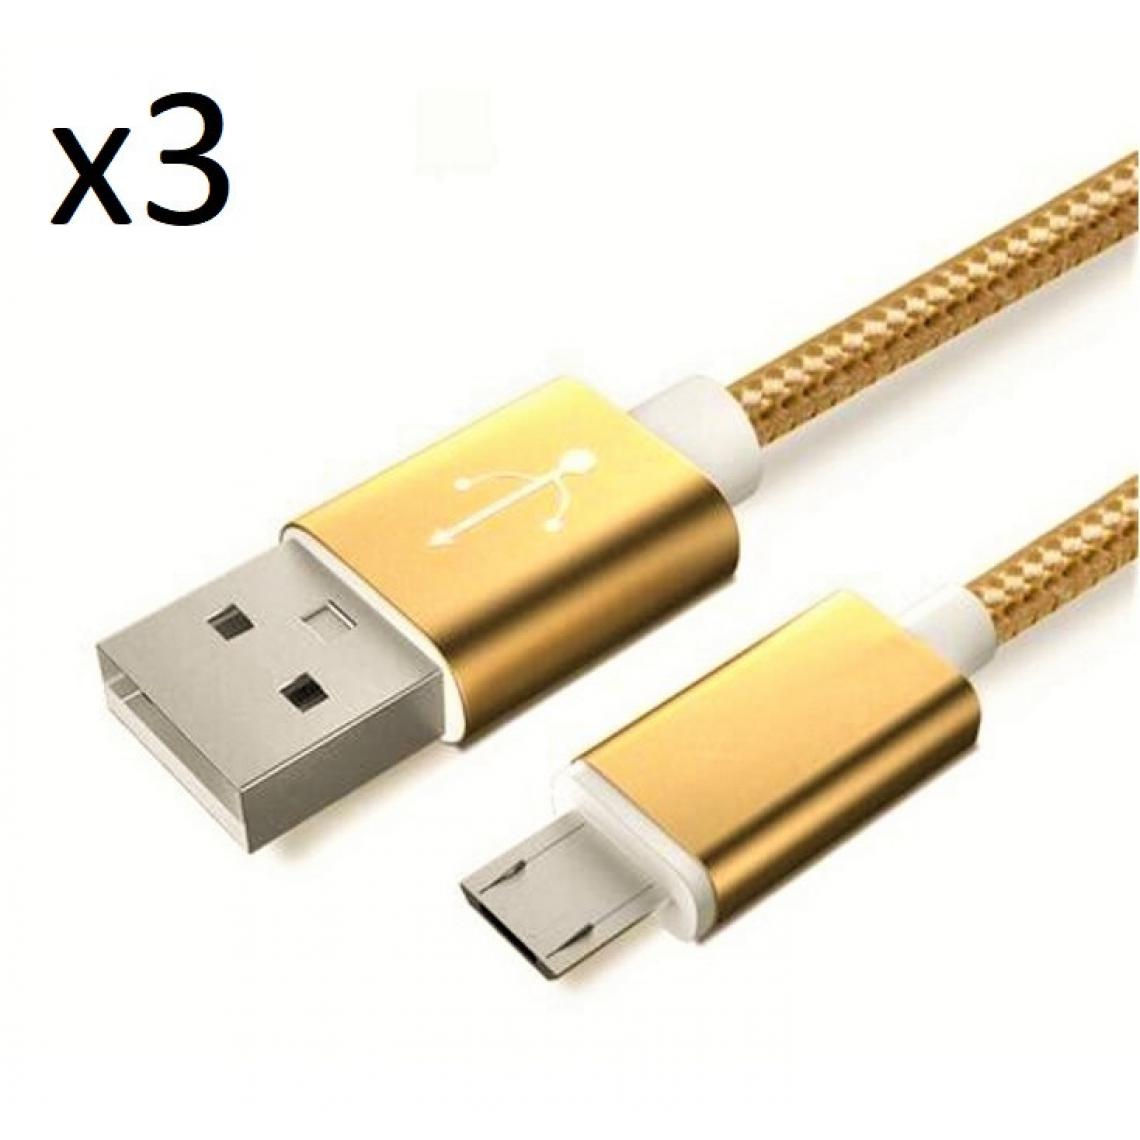 Shot - Pack de 3 Cables Metal Nylon Micro USB pour WIKO View 2 Plus Smartphone Android Chargeur (OR) - Chargeur secteur téléphone